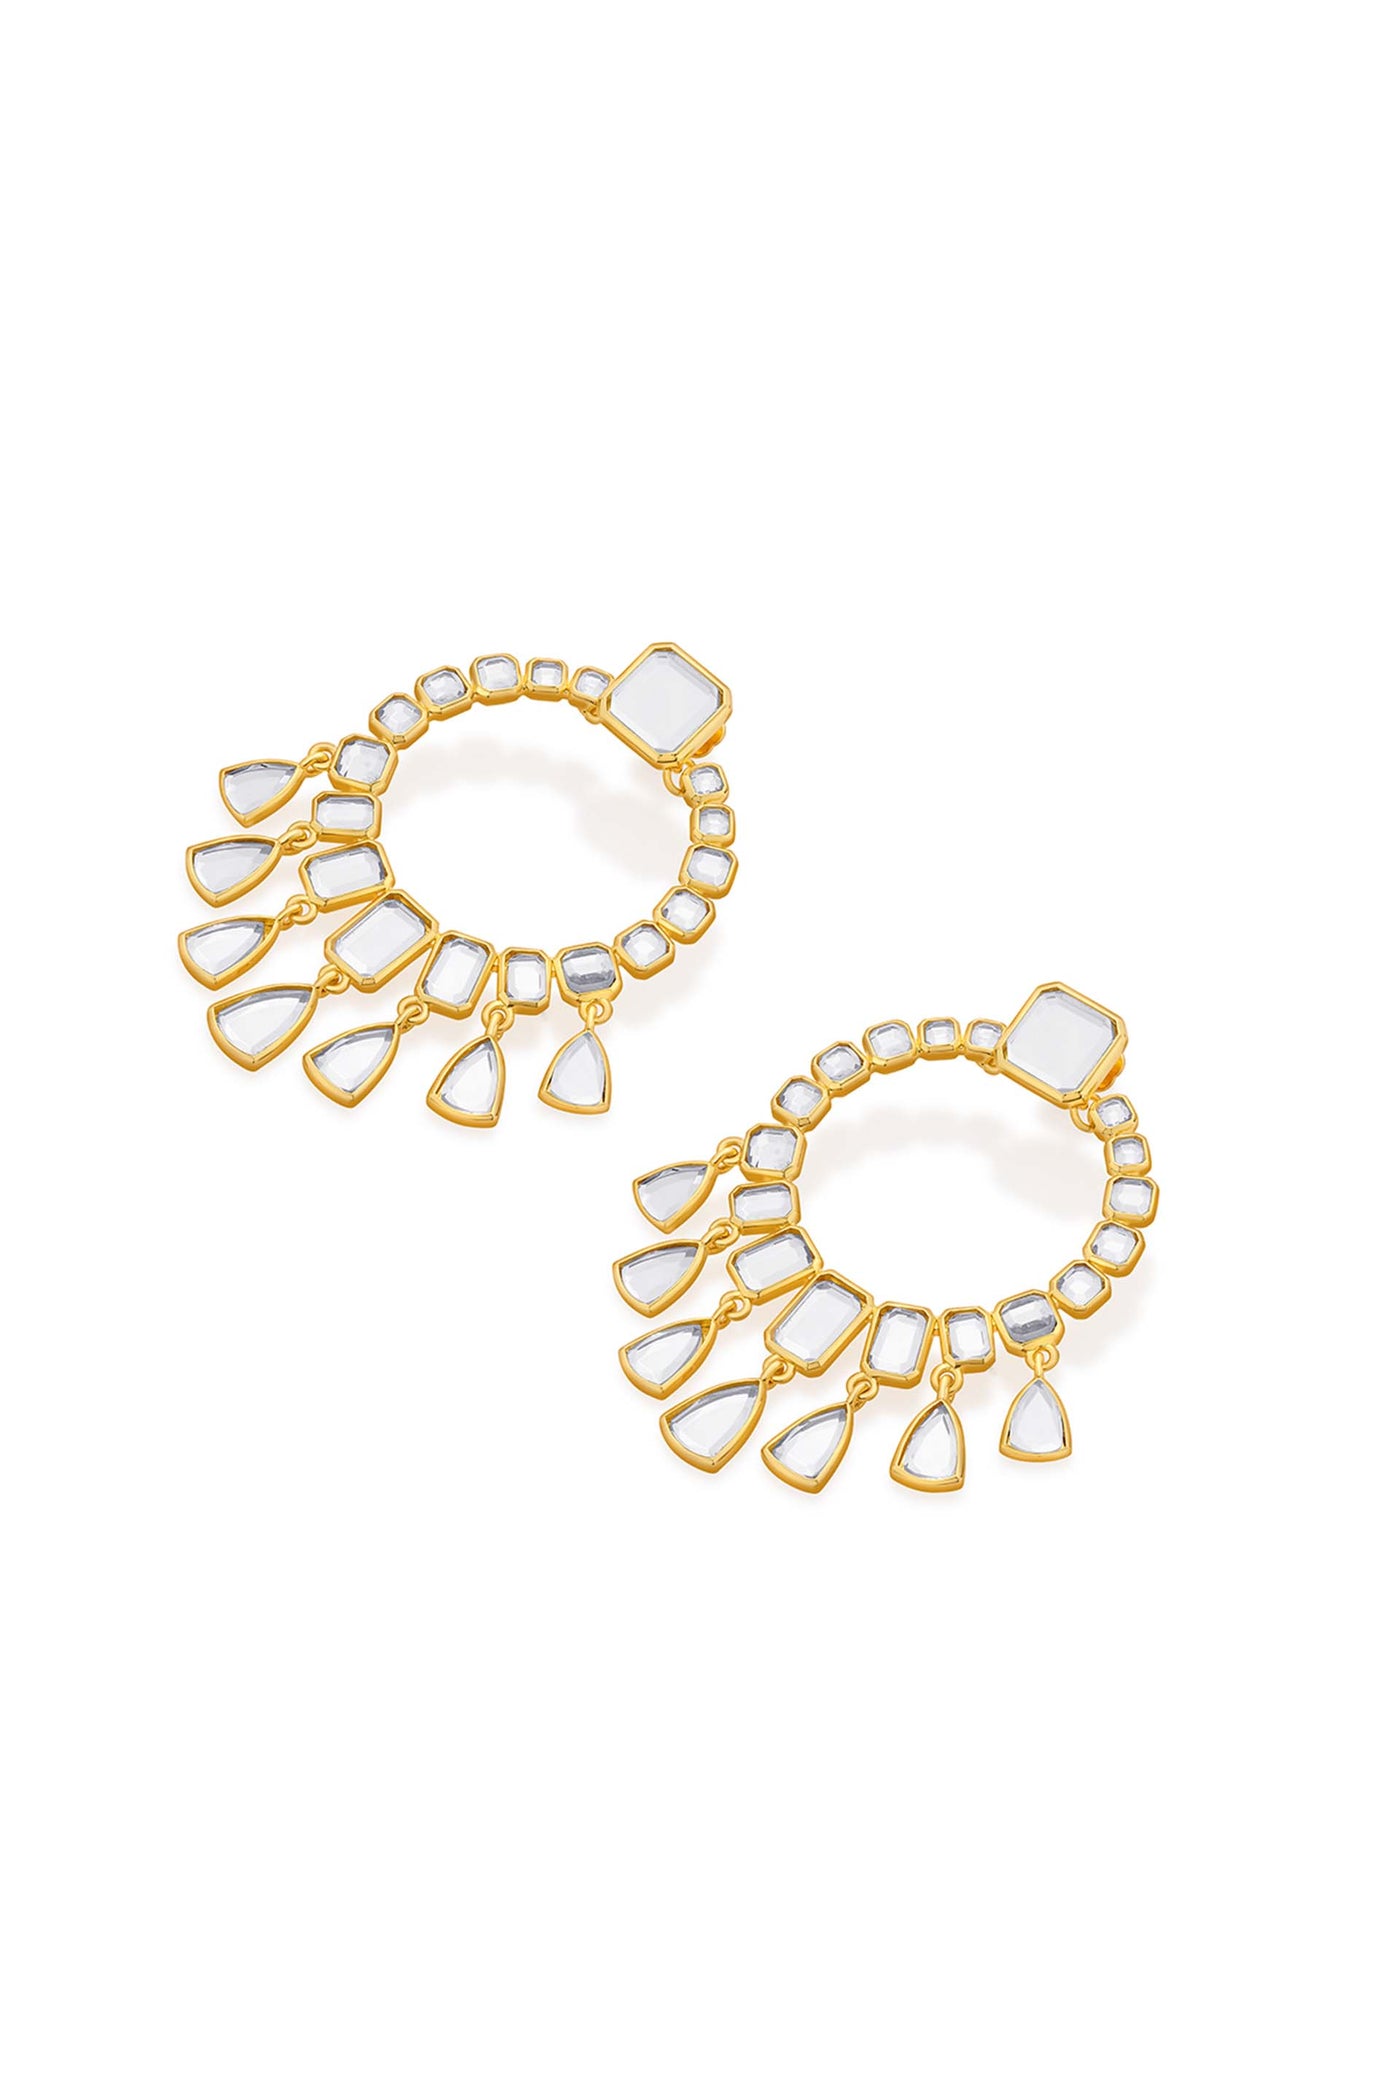 Isharya Ruhaniyat Statement Mirror Drop Earrings gold fashion jewellery online shopping melange singapore indian designer wear